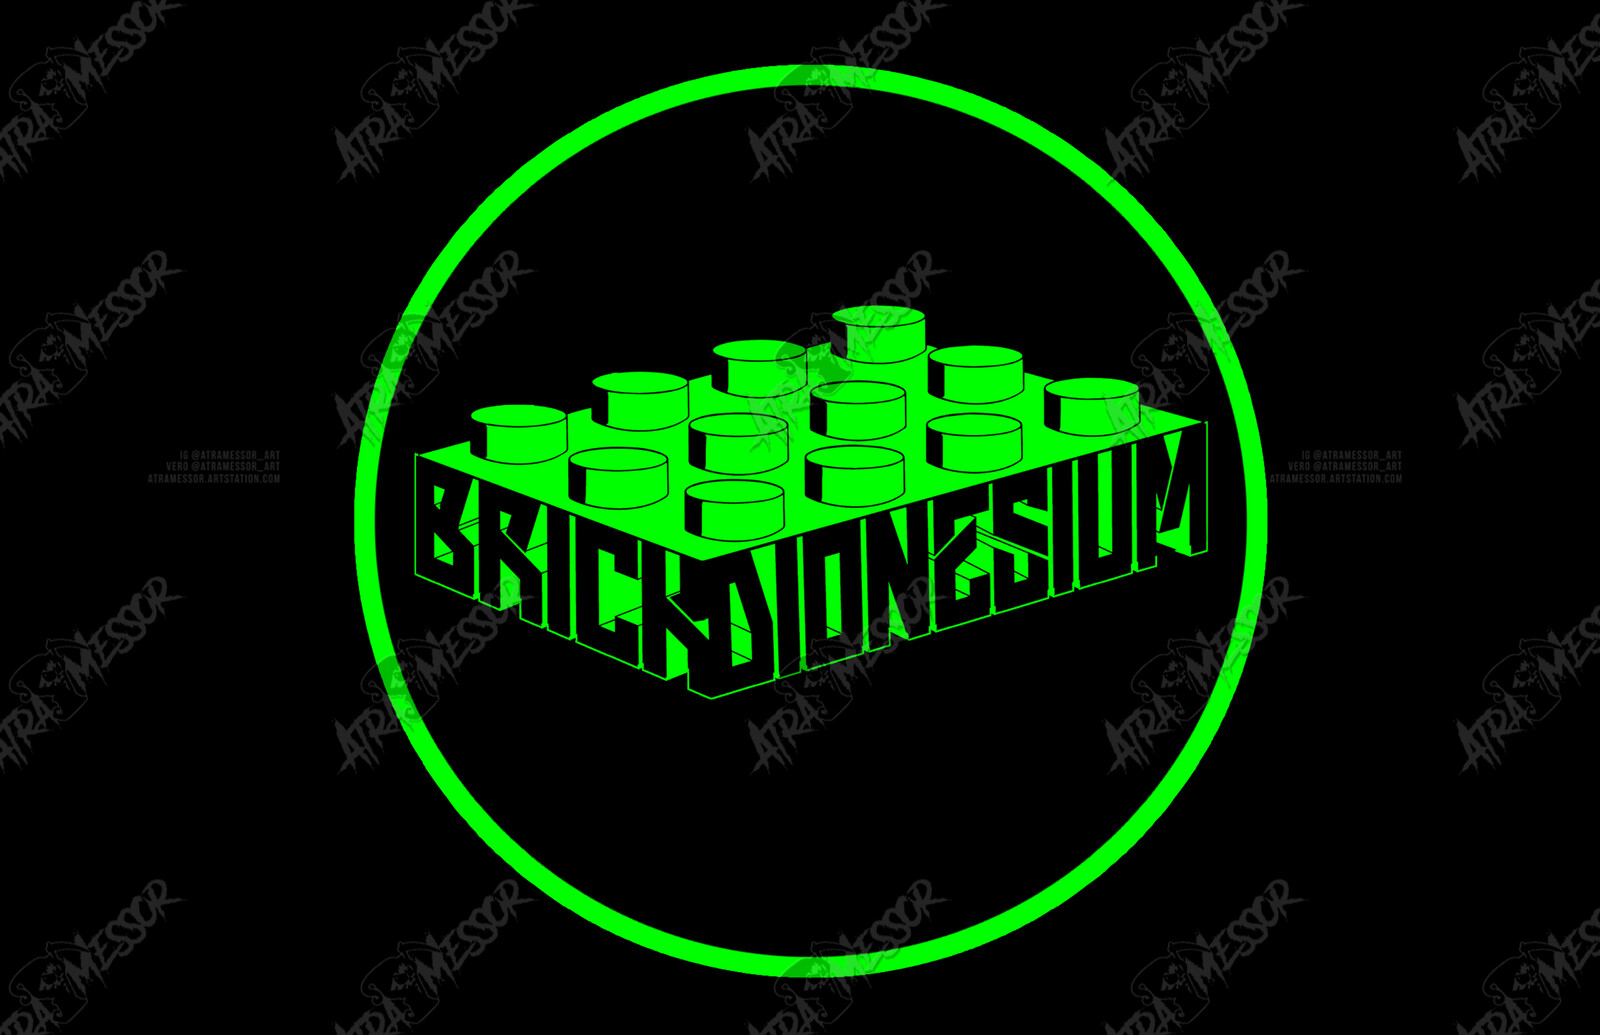 BrickDionesium Logo
(commission)